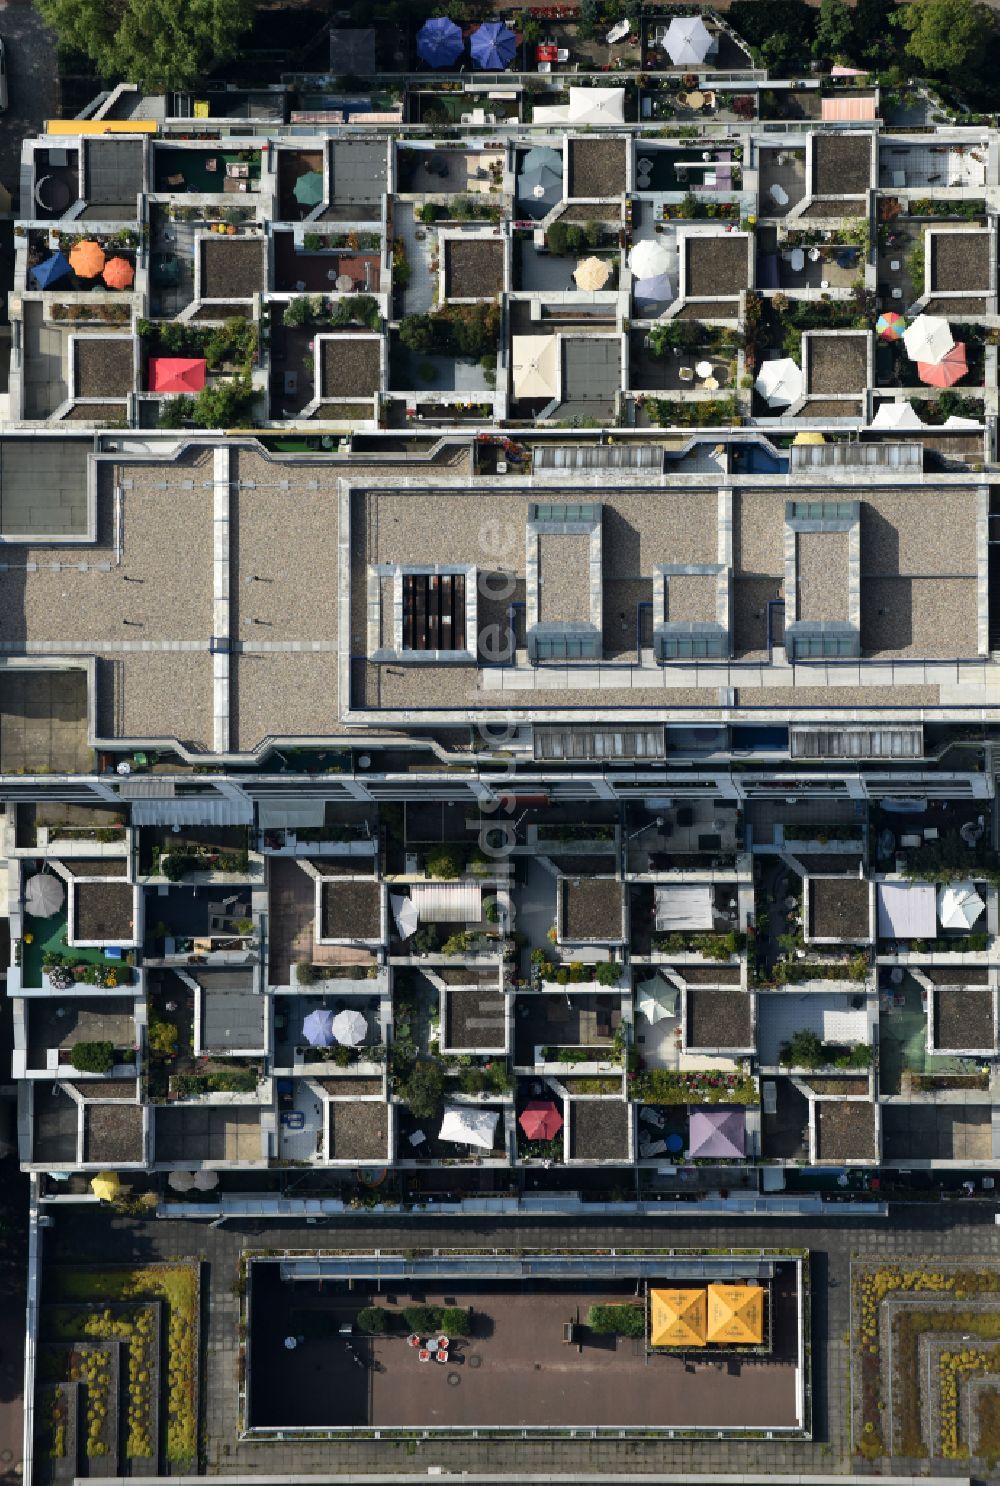 Luftaufnahme Berlin - Dachgarten - Landschaft im Wohngebiet einer Mehrfamilienhaussiedlung in Berlin